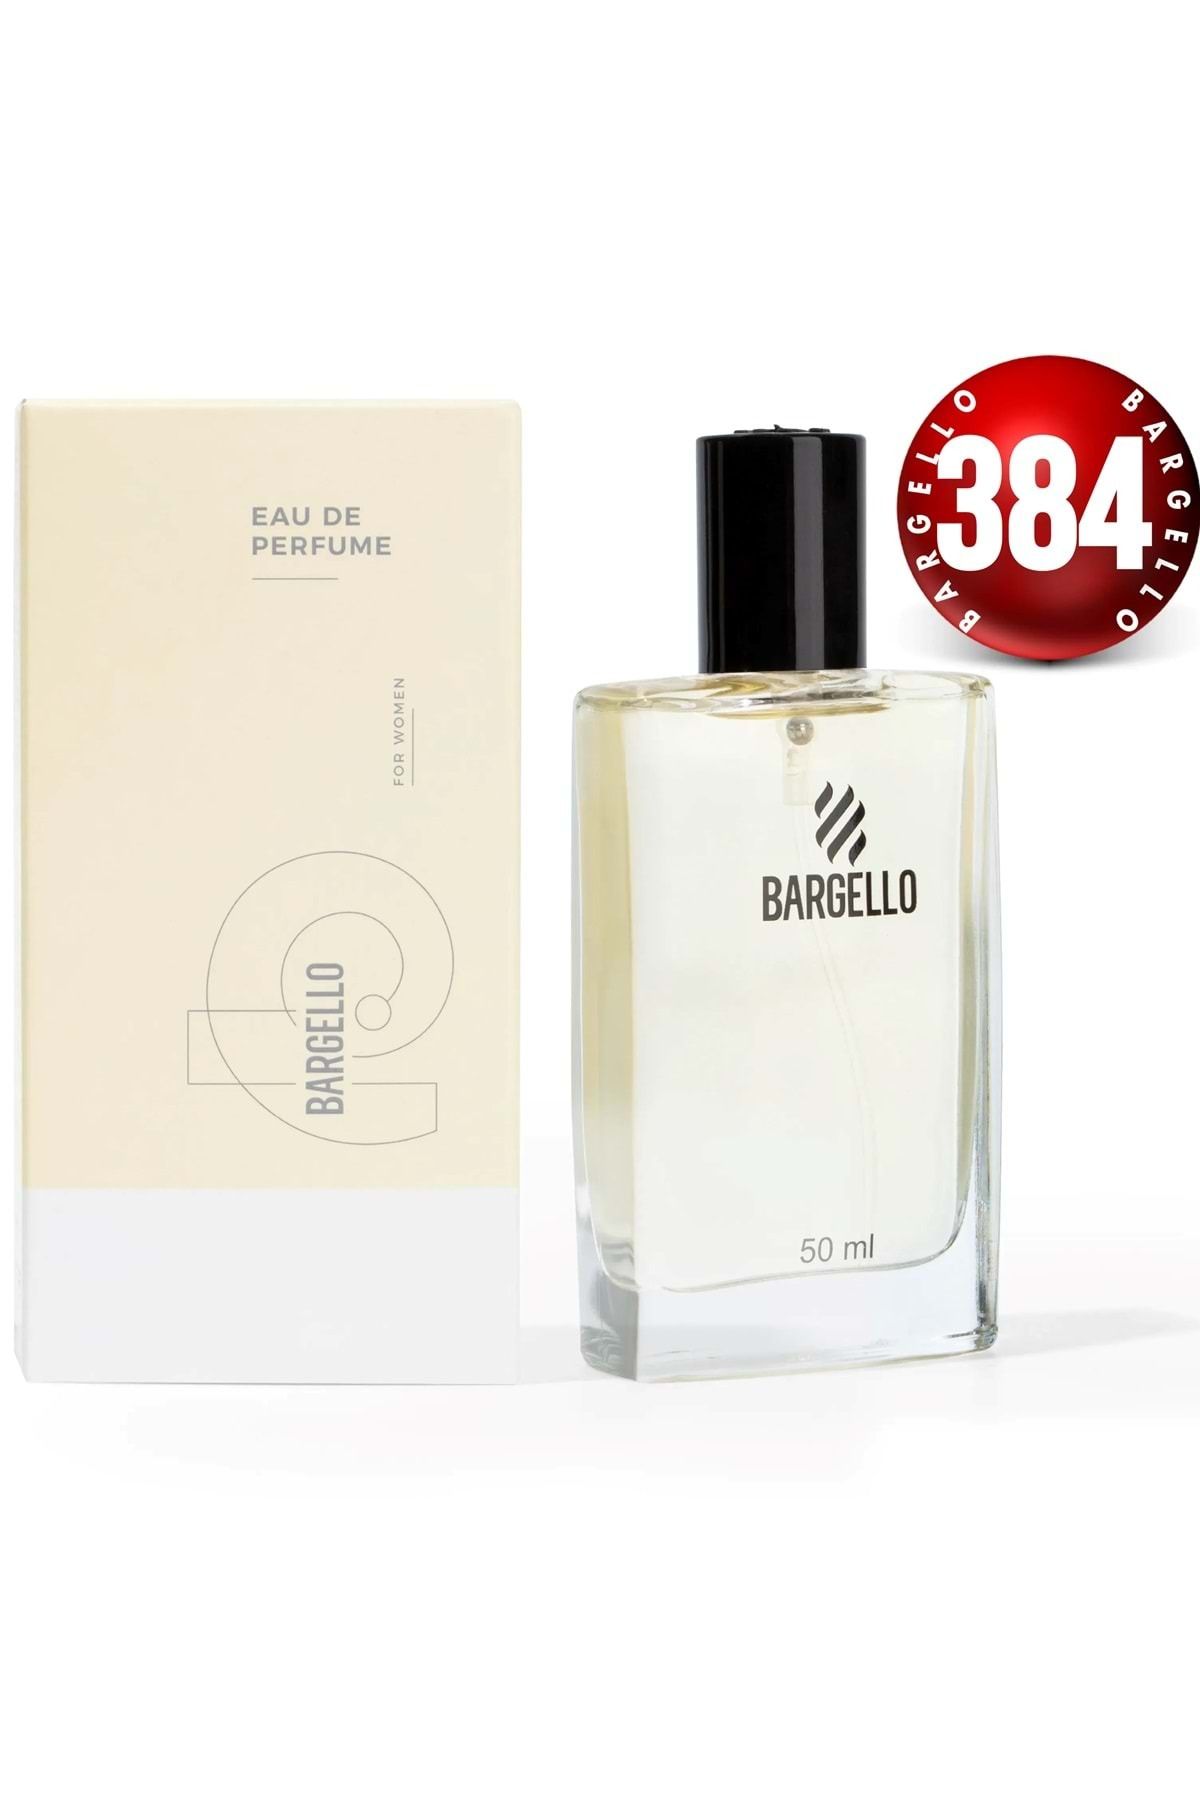 Bargello 384 Kadın Parfüm 50 ml Edp Floral